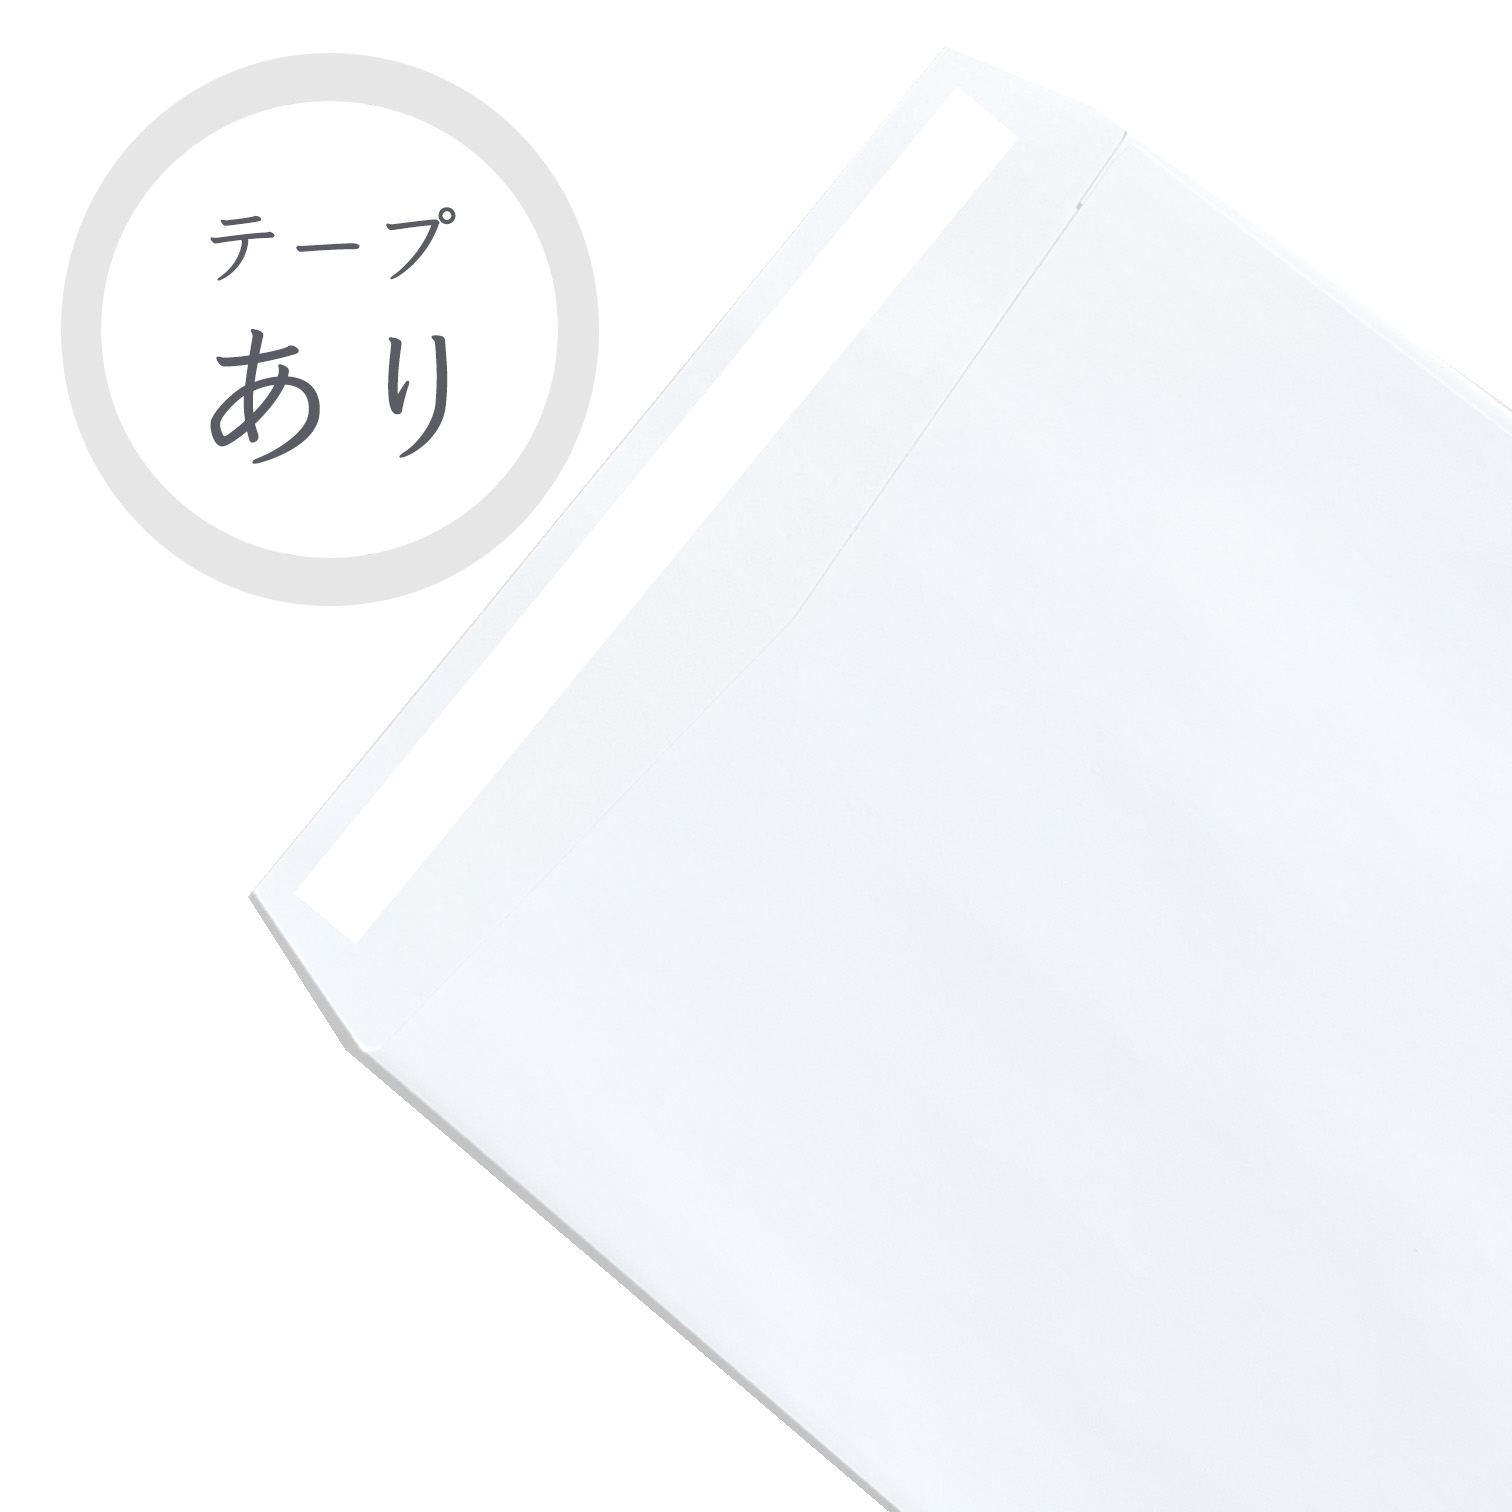 長4ホワイト封筒 80g/平米 ファインタック付 1000枚 商品画像サムネイル5